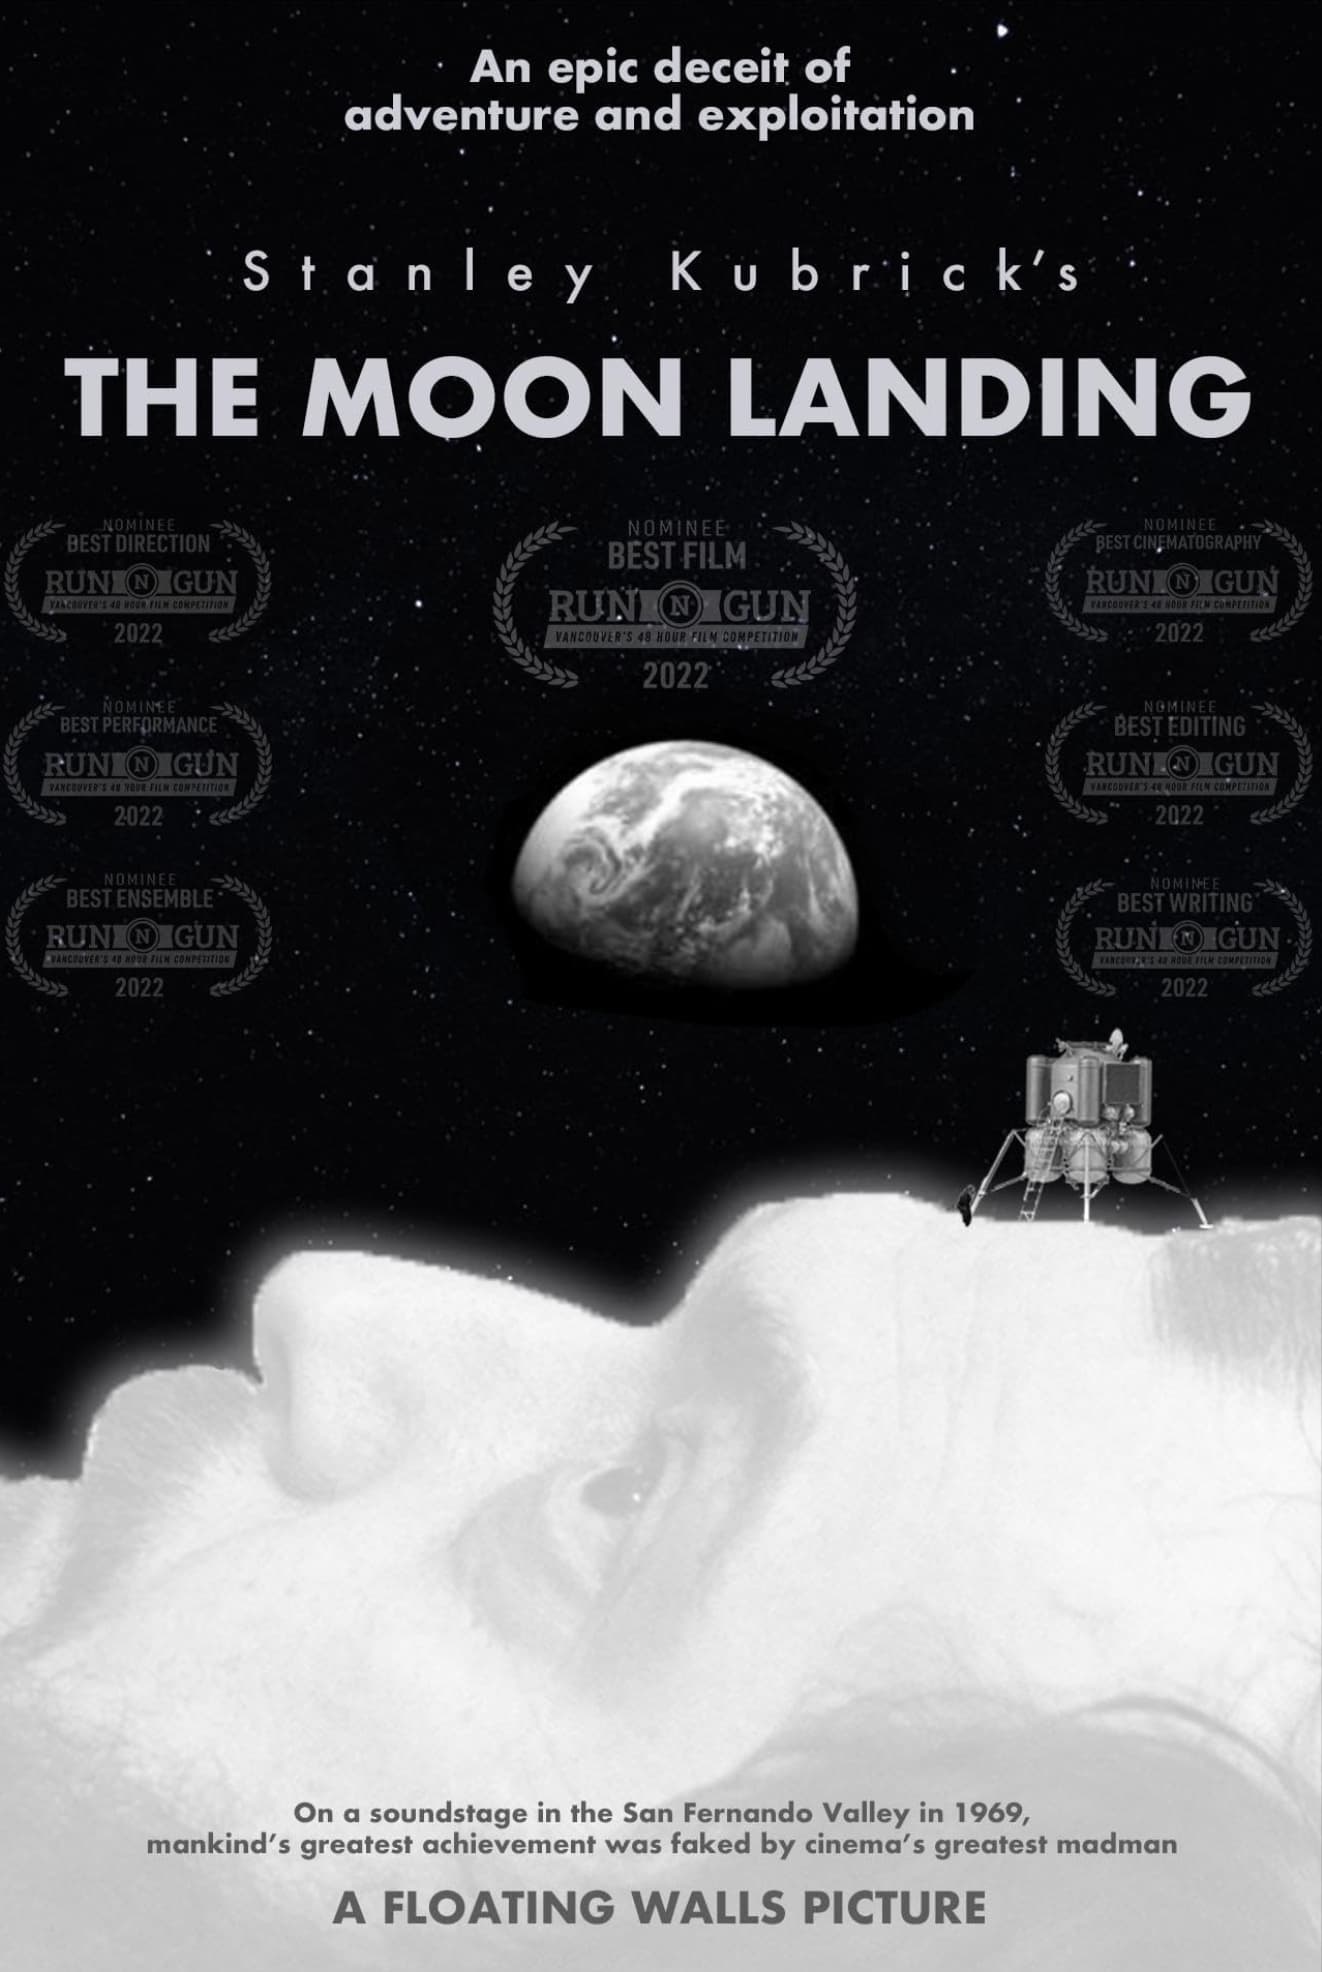 Stanley Kubrick's The Moon Landing